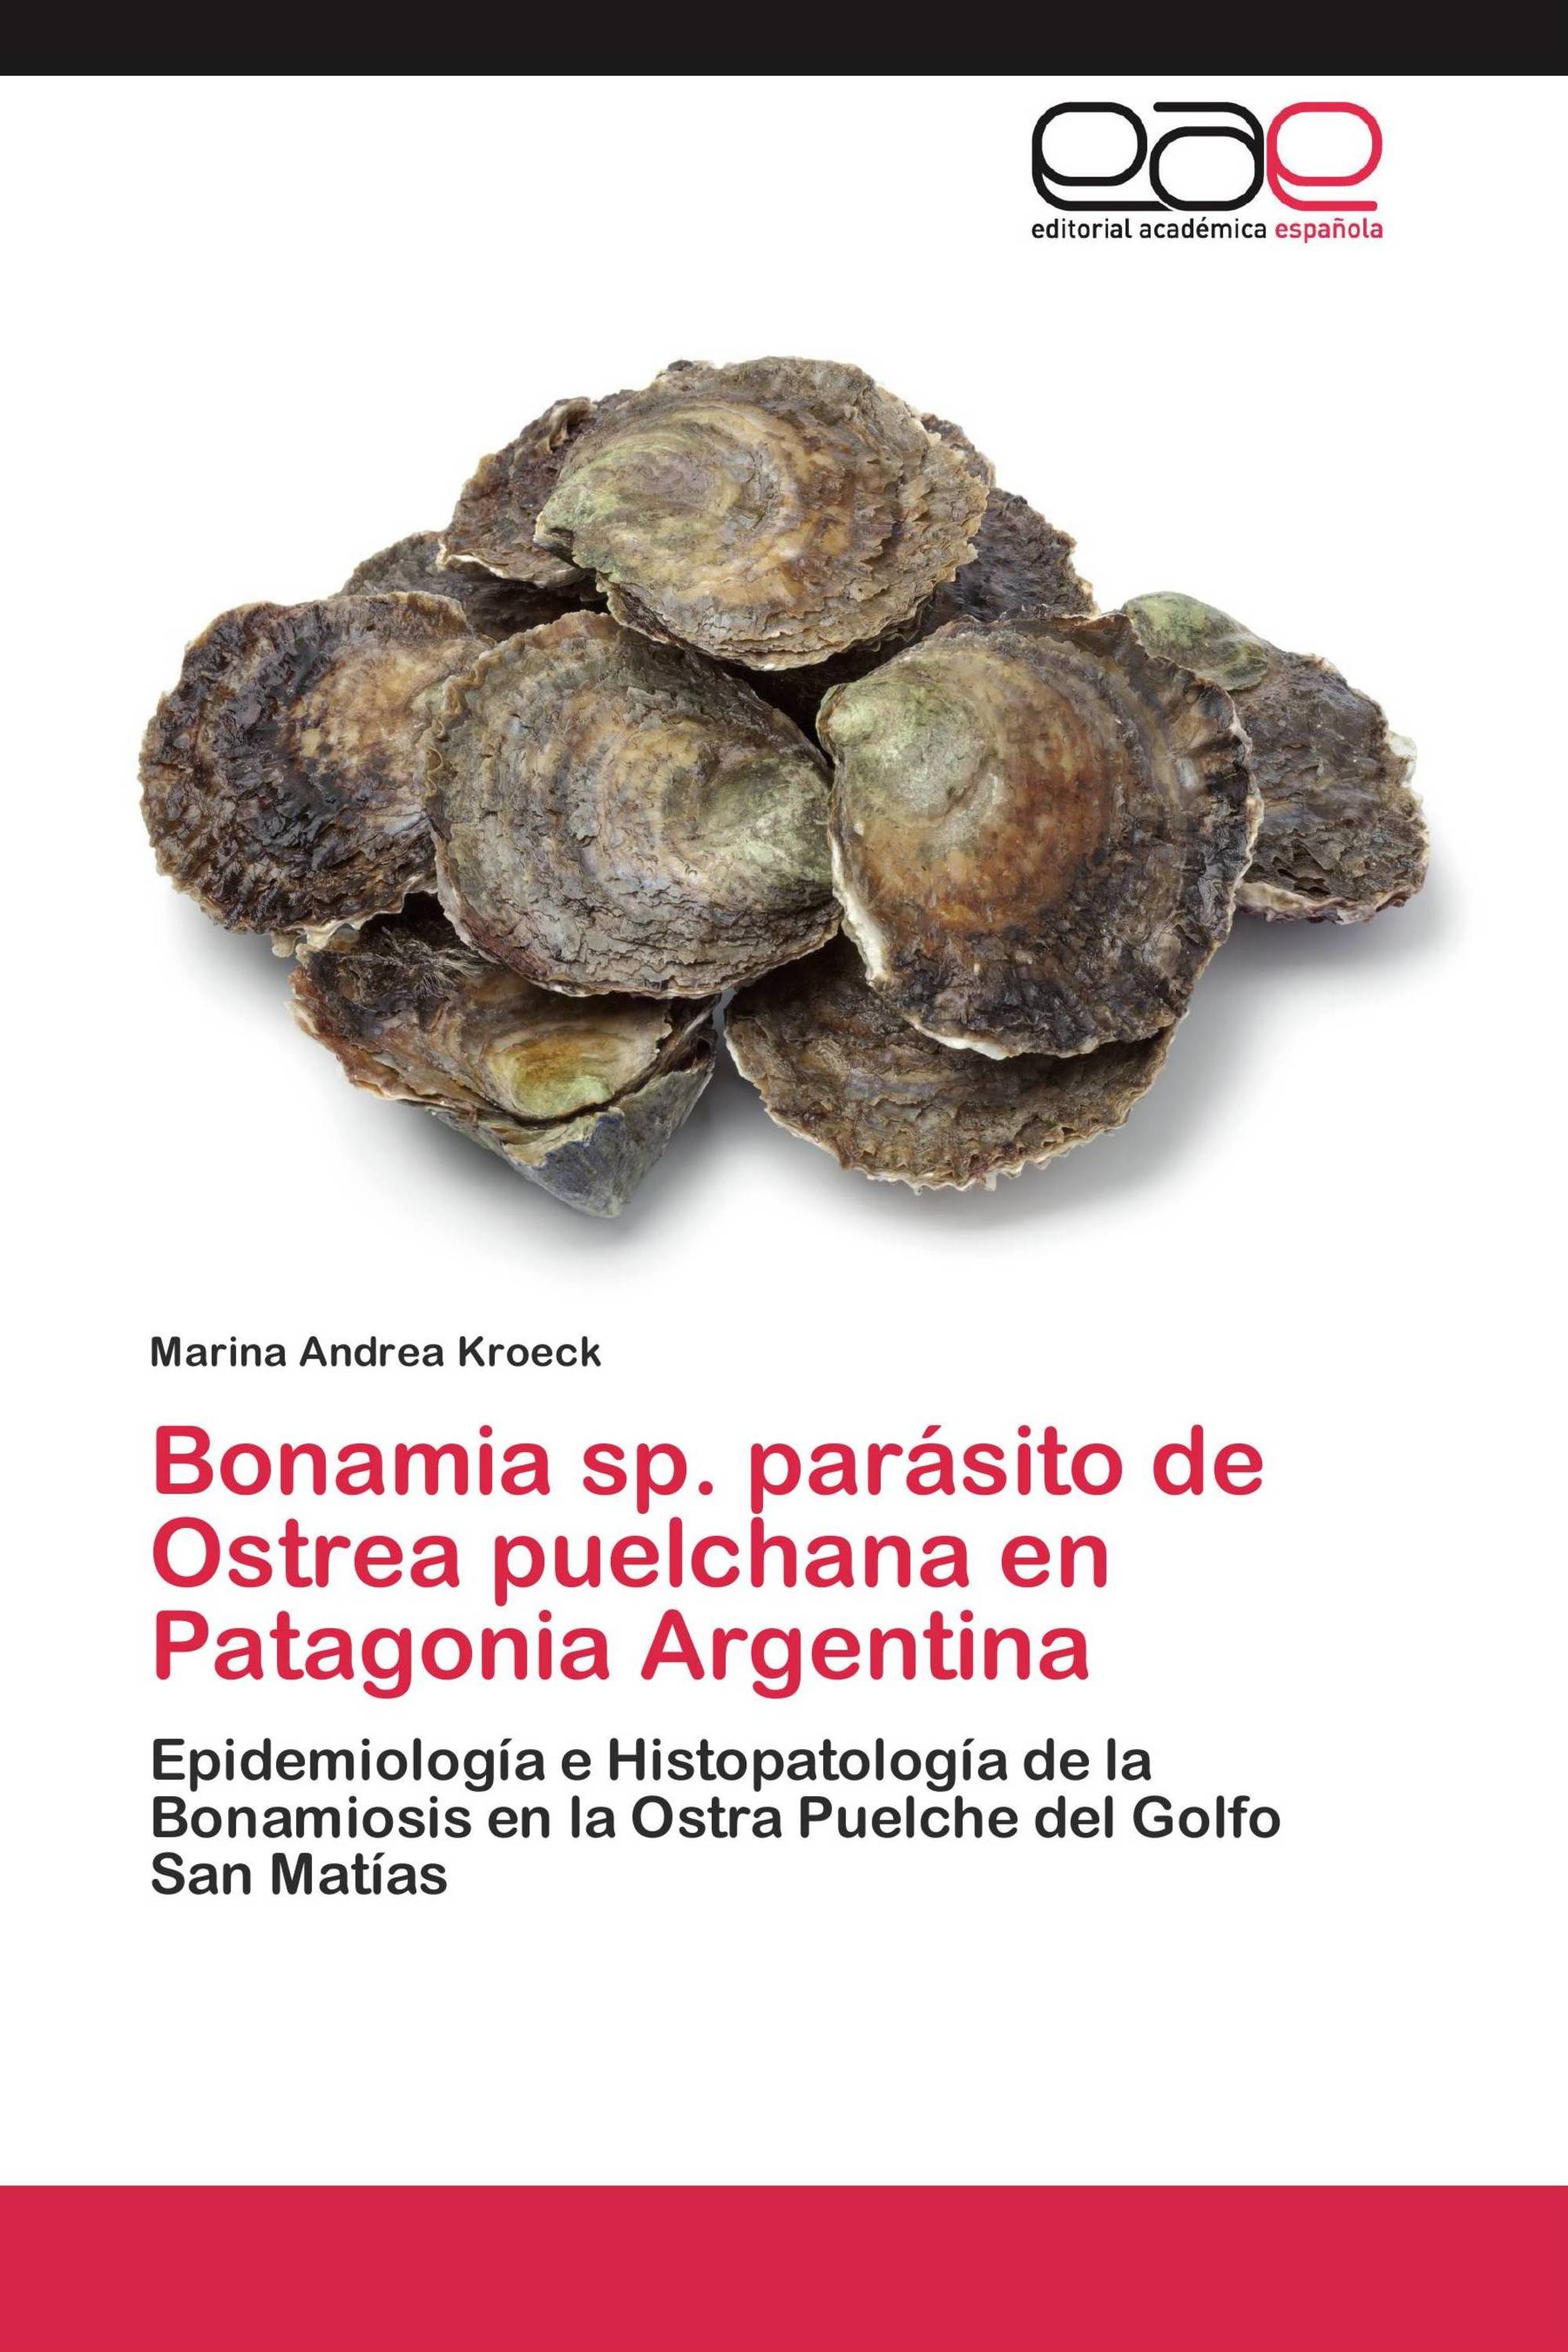 Bonamia sp. parásito de Ostrea puelchana en Patagonia Argentina